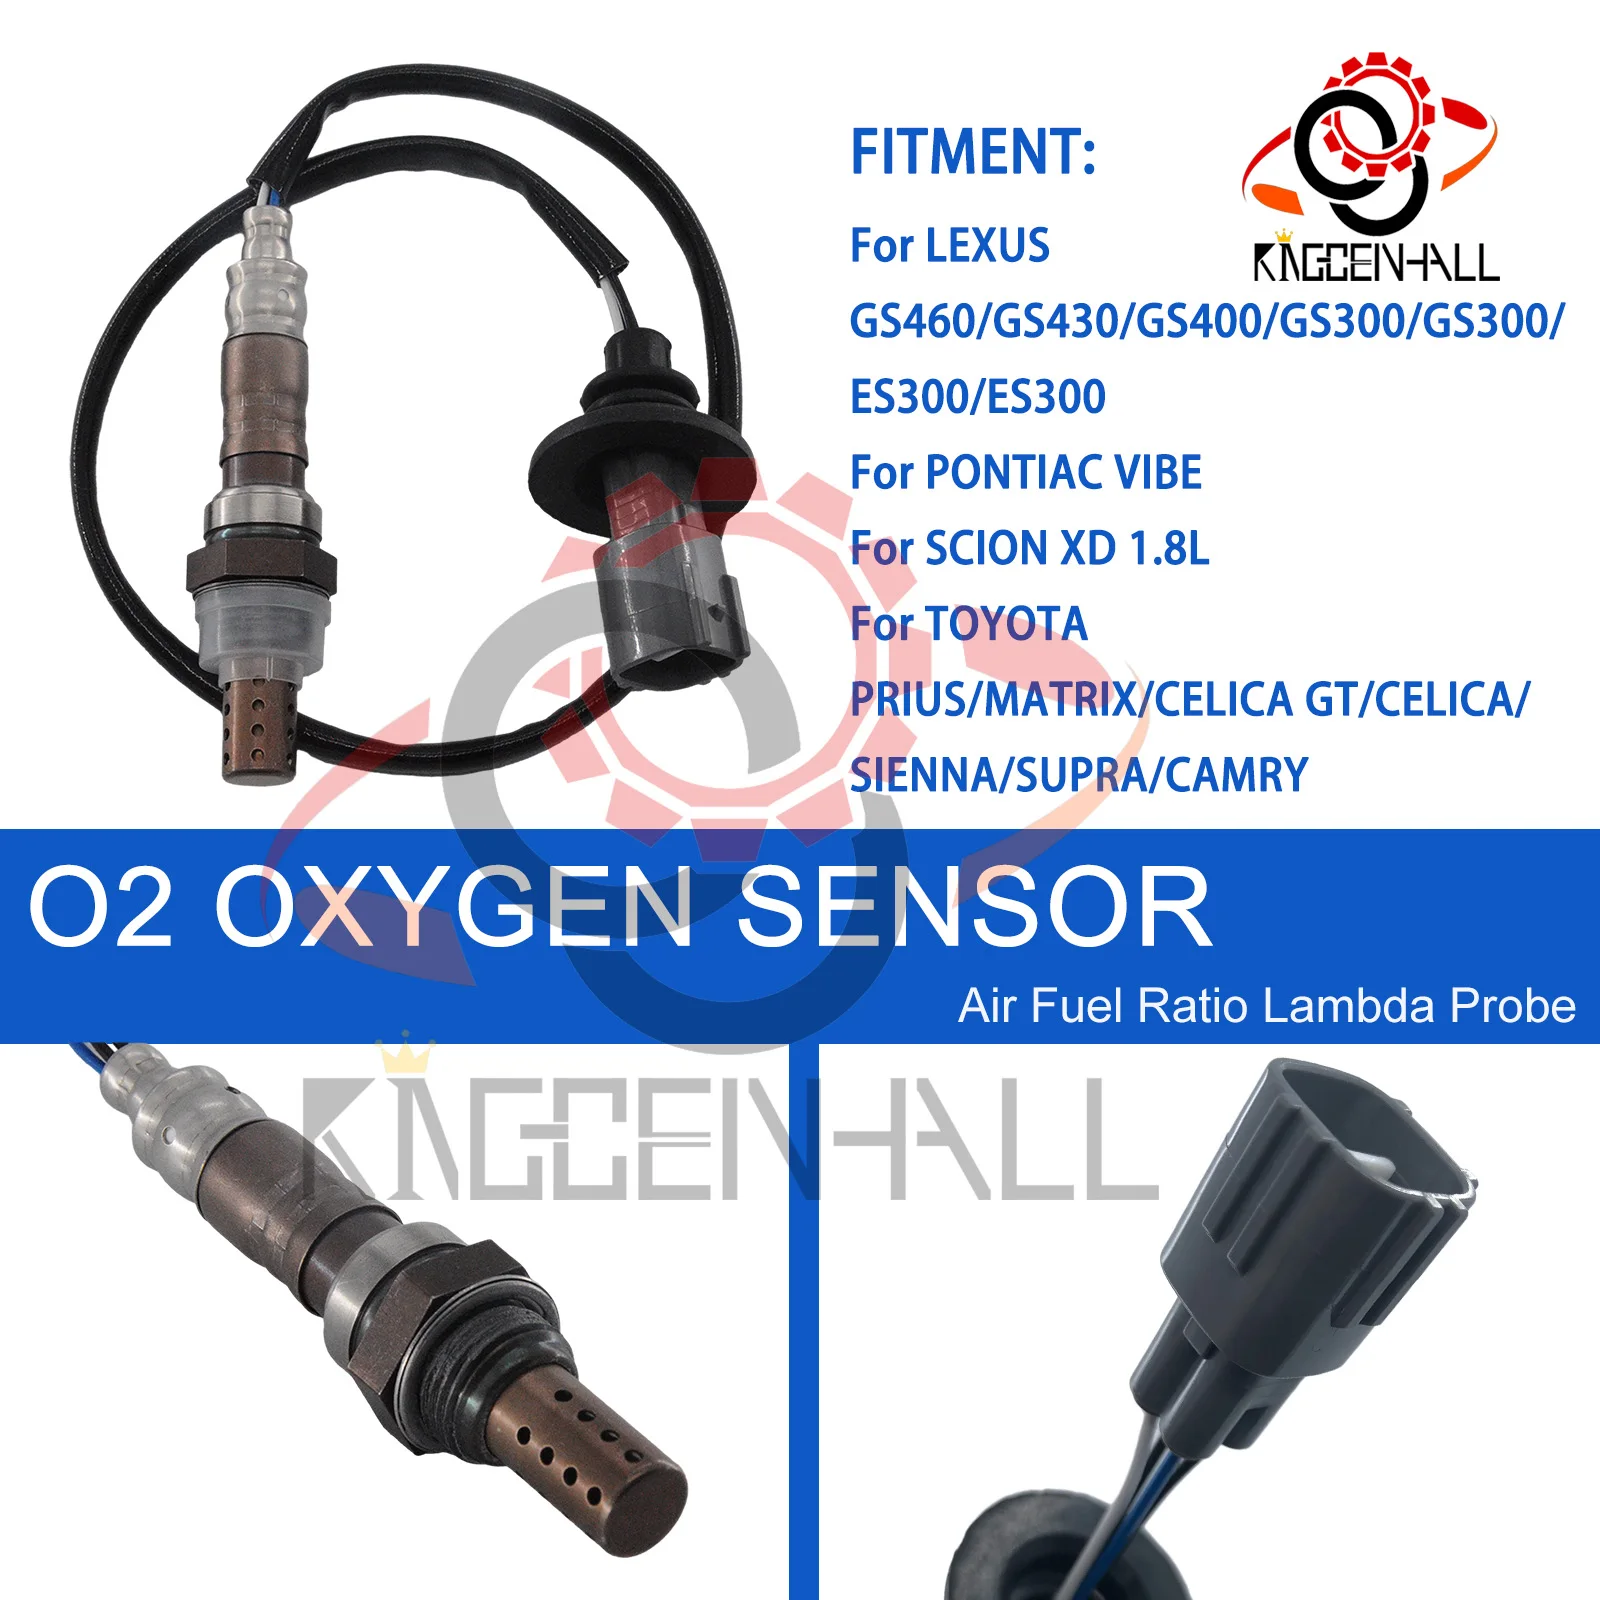 

Downstream O2 Oxygen Sensor 234-4623 For LEXUS ES300 GS300 GS400 GS430 GS460 PONTIAC VIBE SCION XD TOYOTA CAMRY CELICA MATRIX